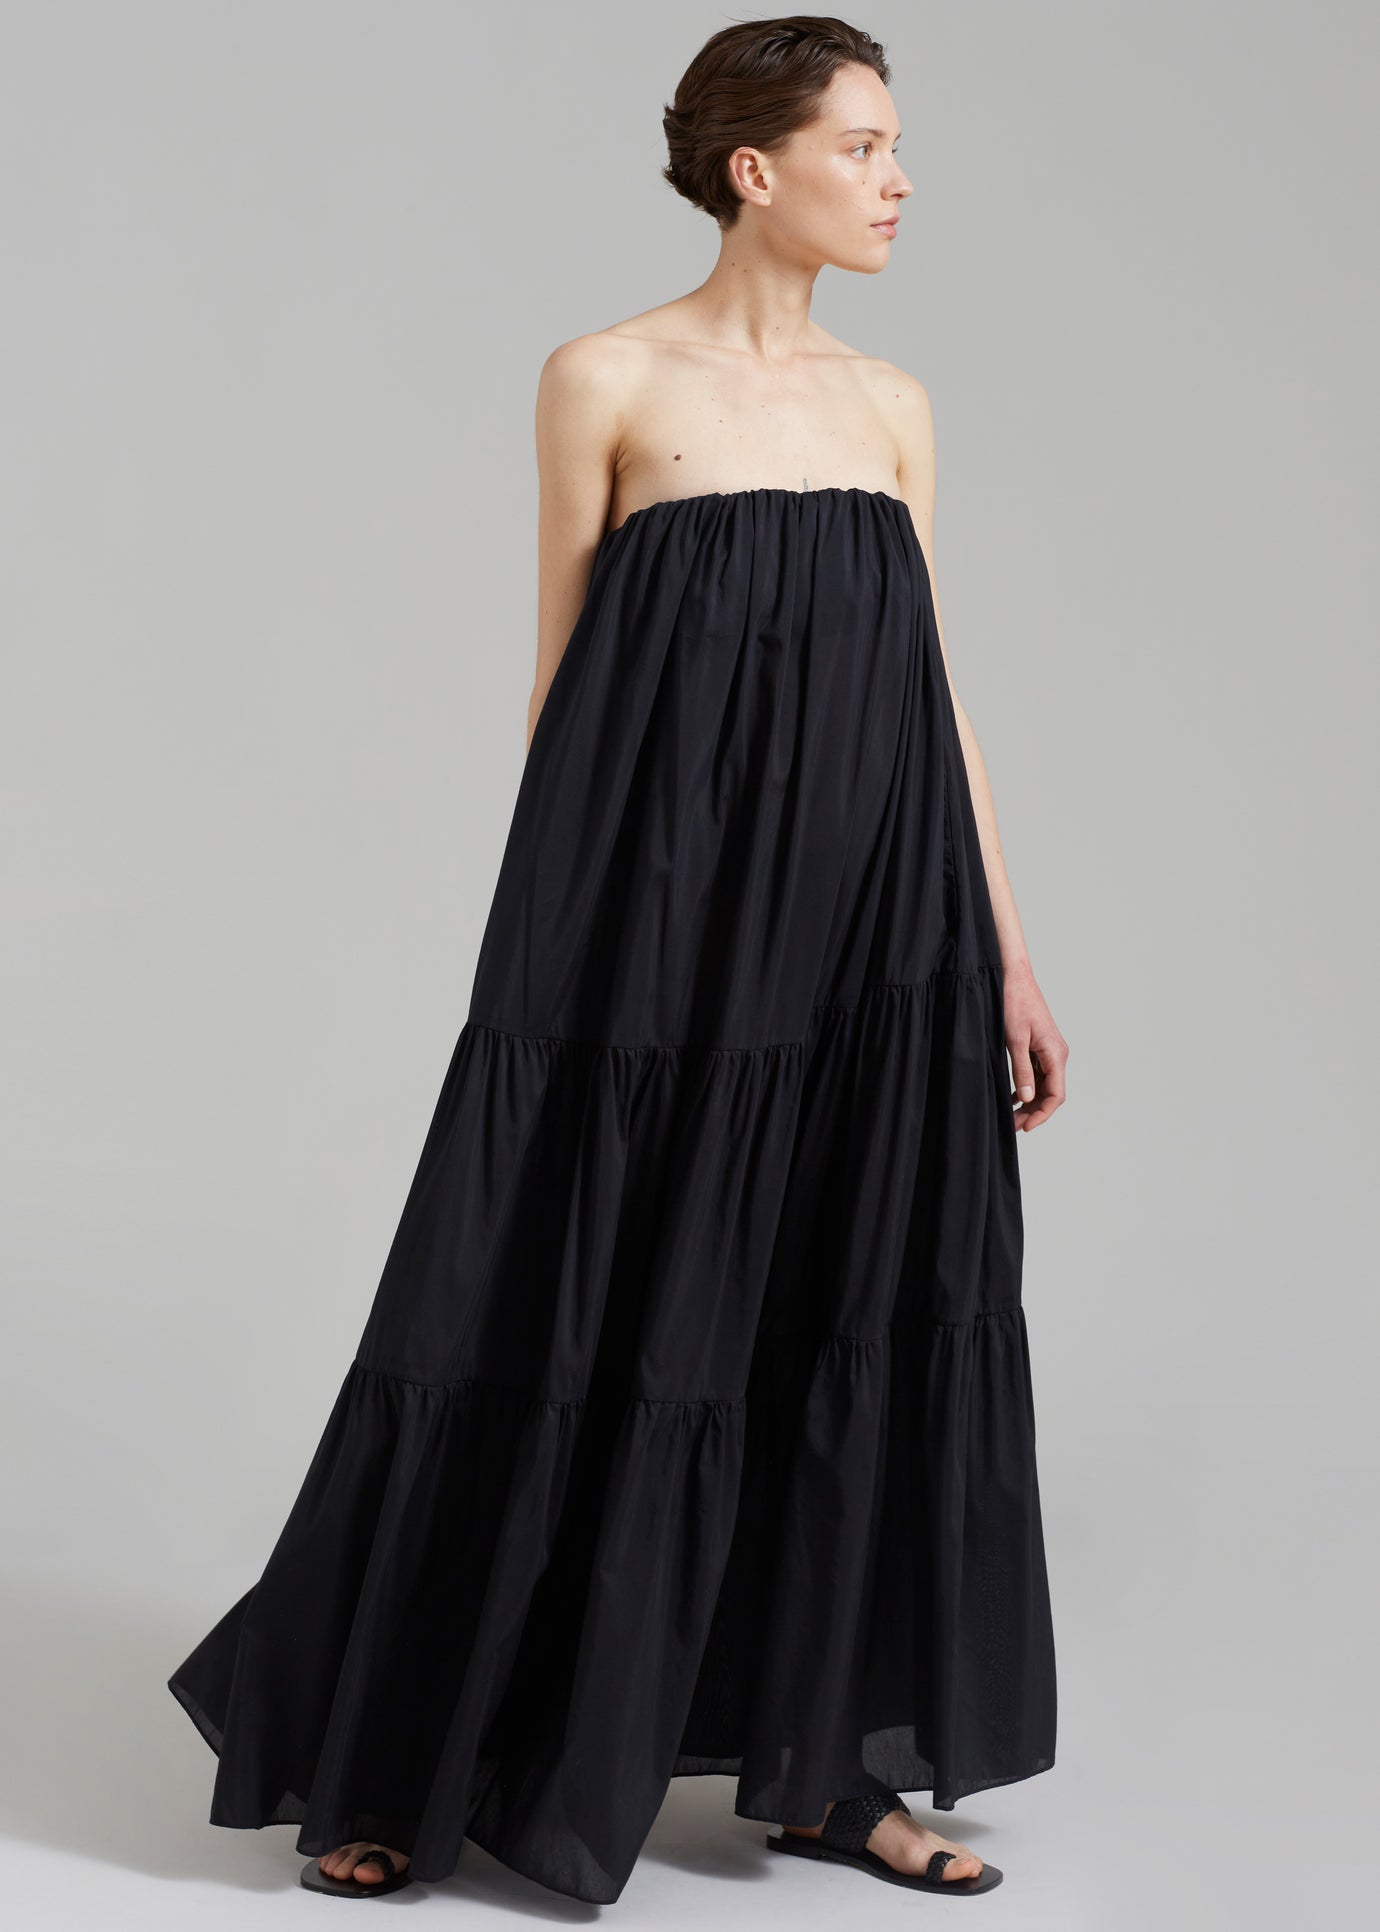 Matteau Voluminous Strapless Tiered Dress - Black - 1